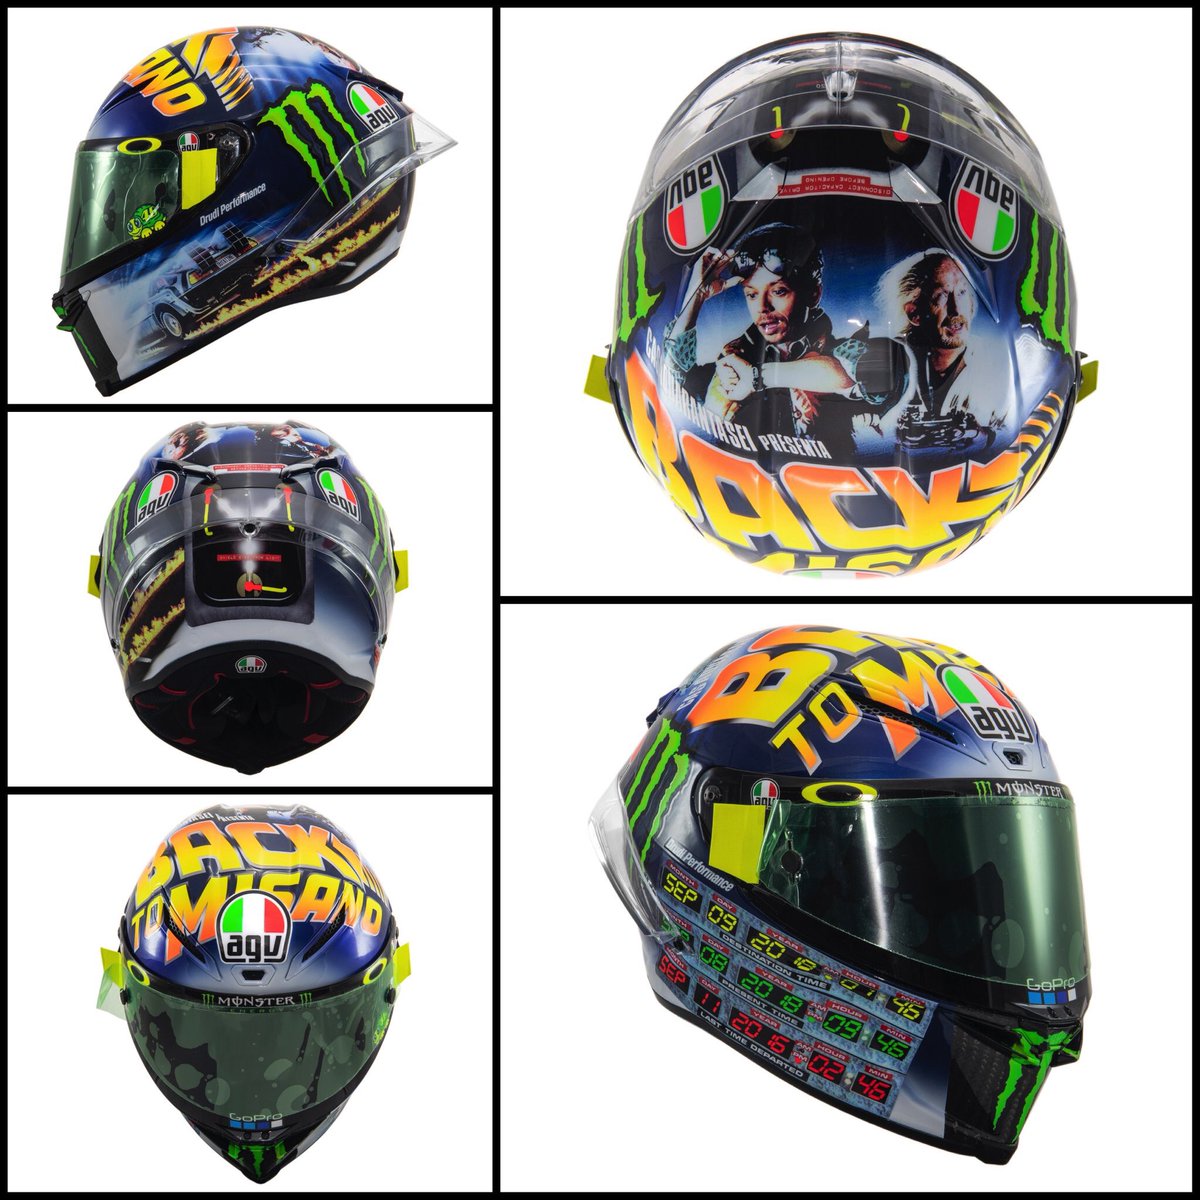 Valentino Rossi rinde homenaje a su vuelta al GP de Misano y a ‘Regreso al futuro’ en su casco